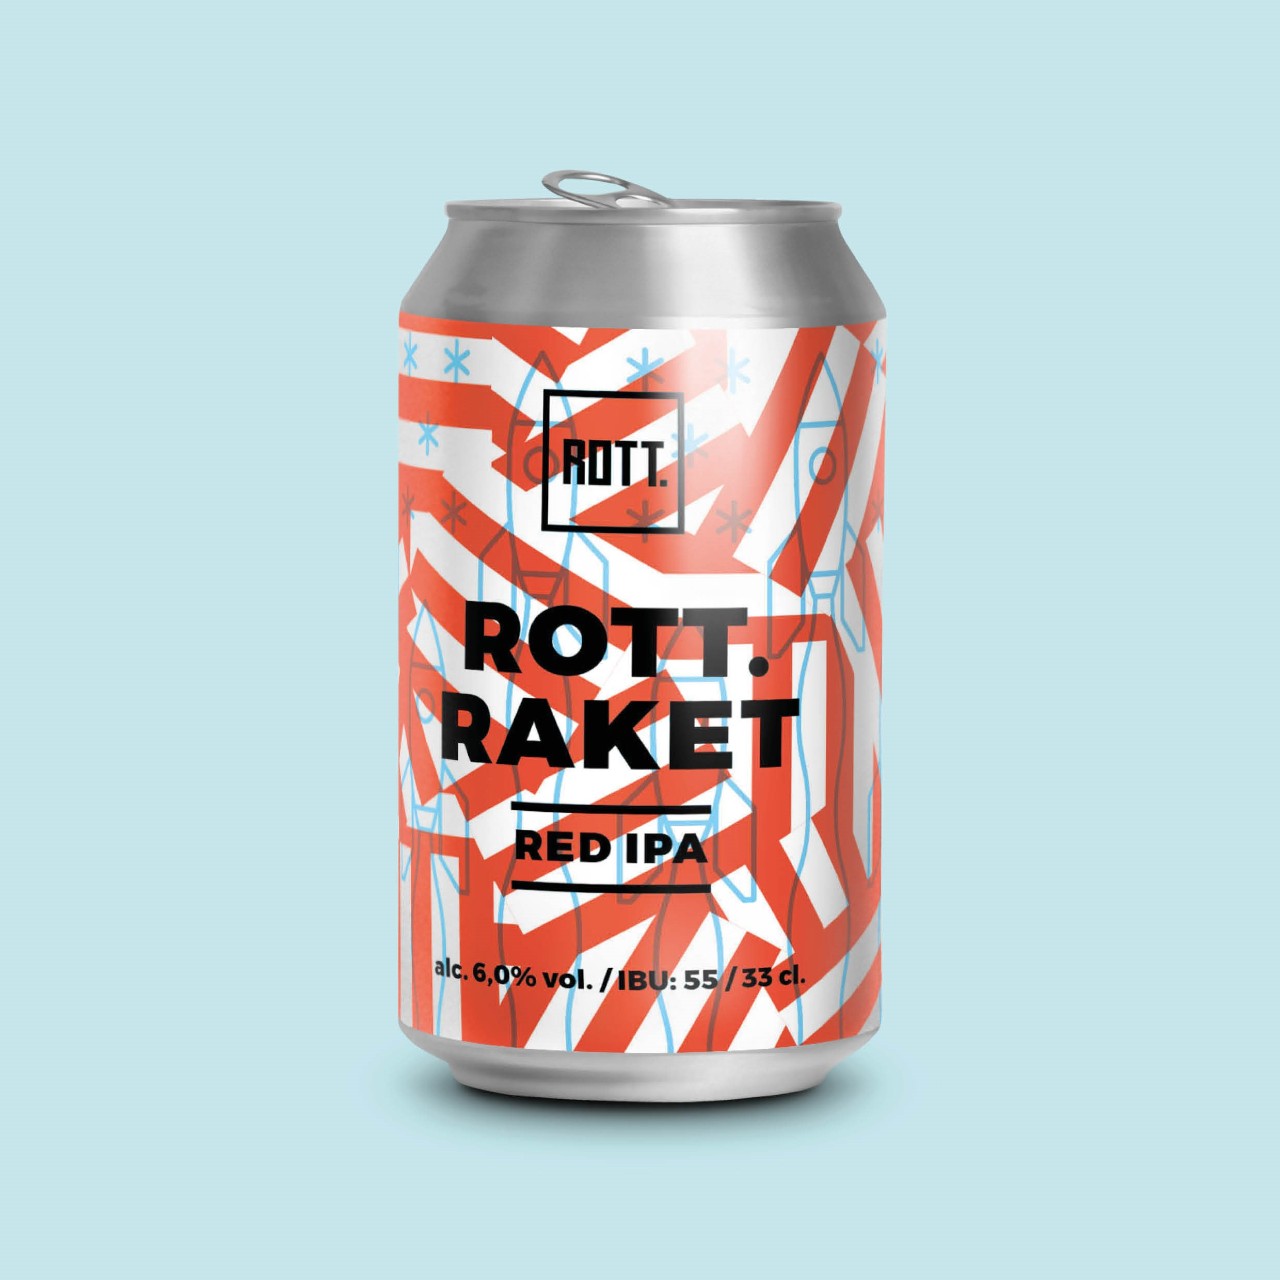 ROTT.raket – ROTT. Brouwers